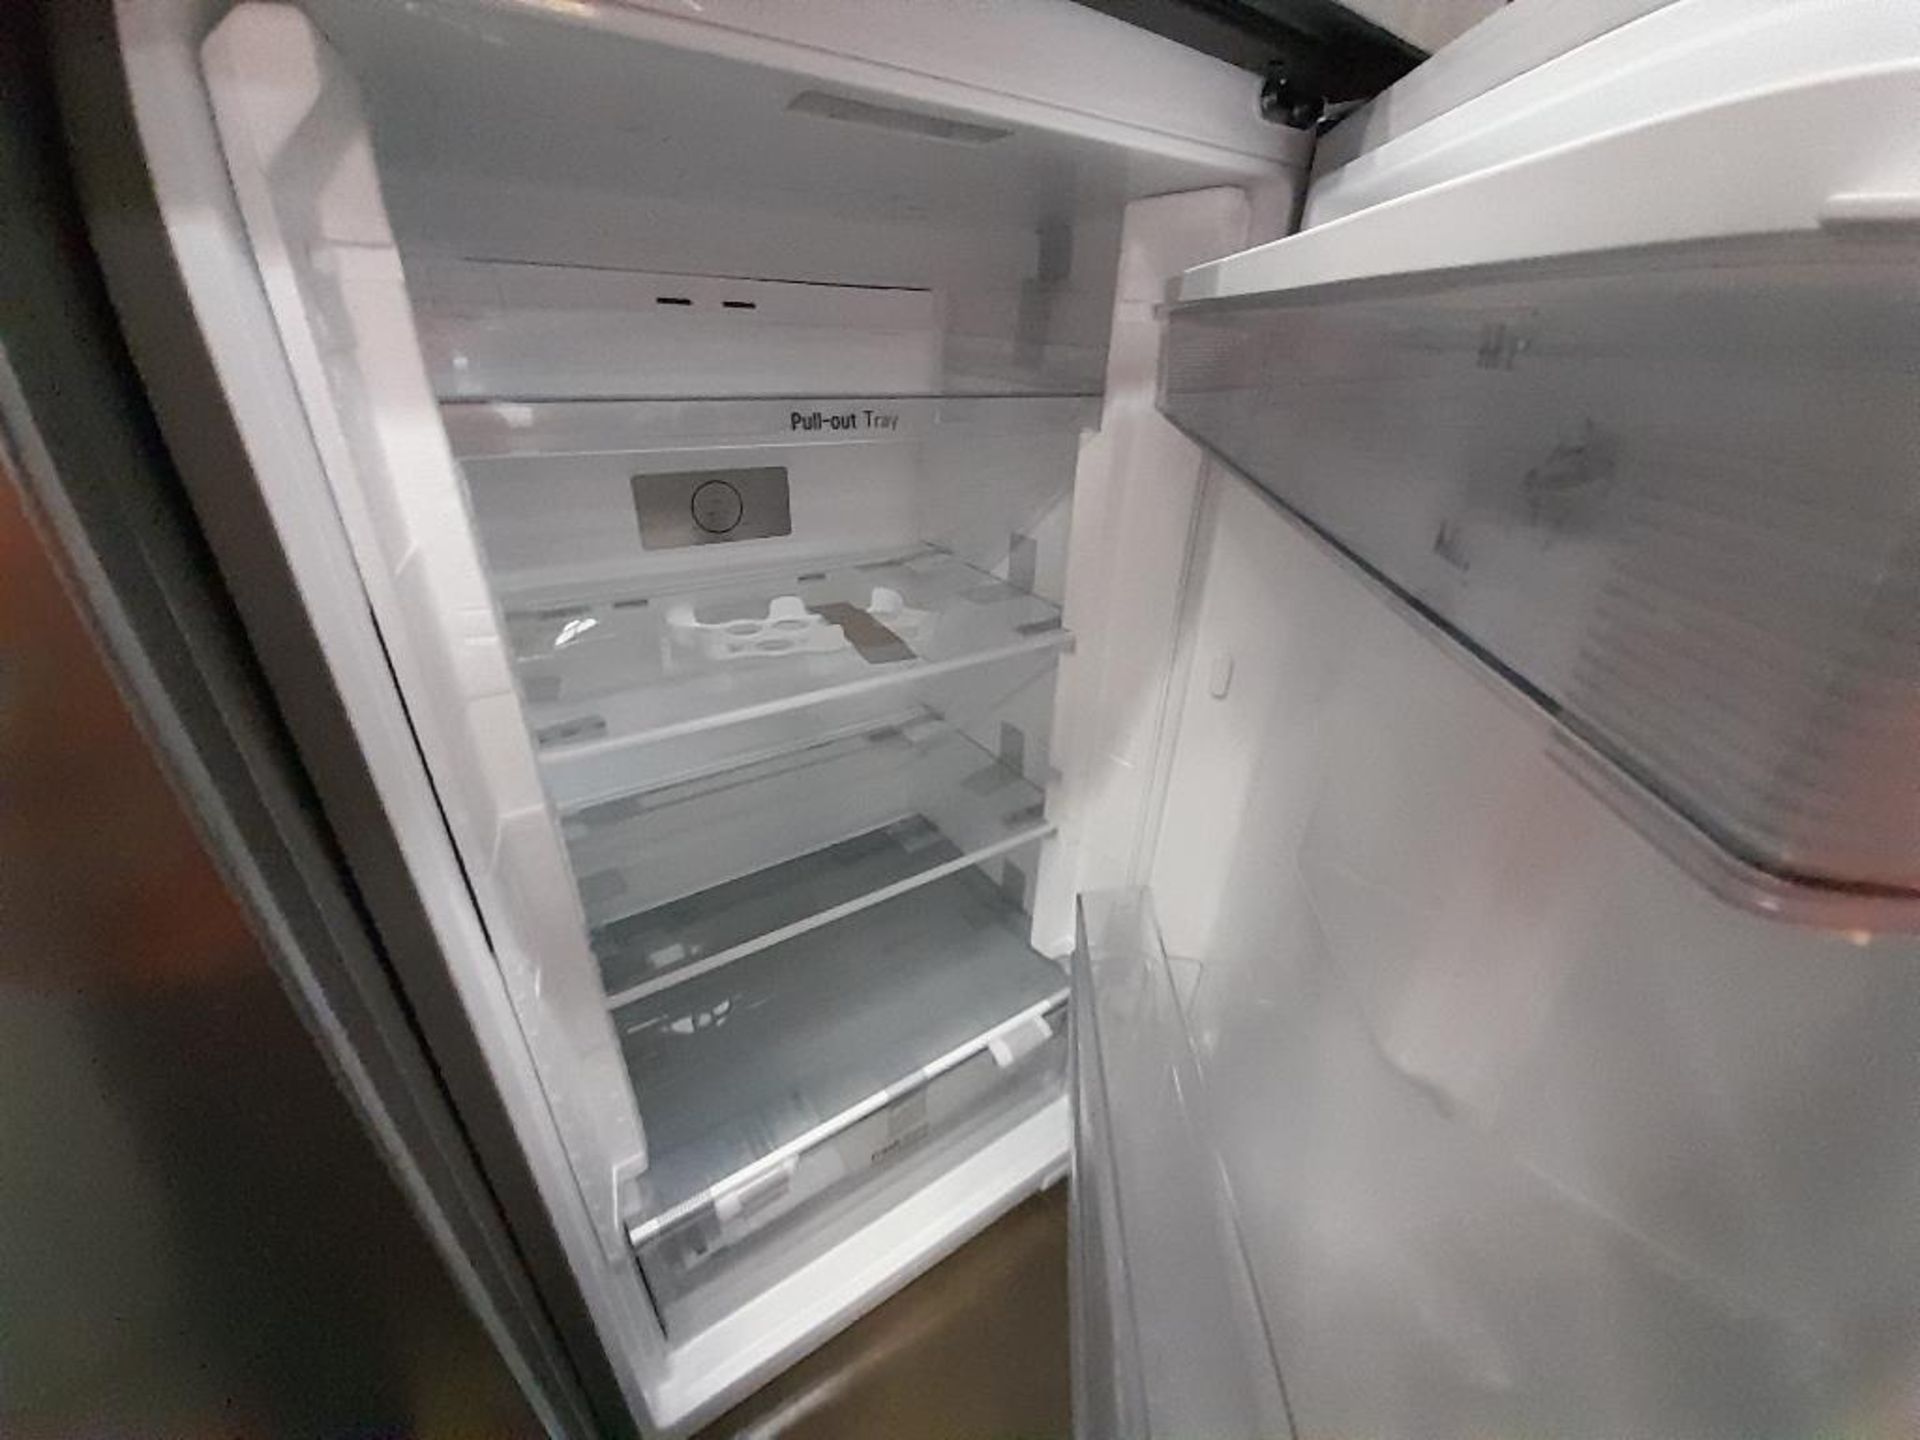 Lote de 2 refrigeradores Contiene: 1 refrigerador con dispensador de agua Marca LG, Modelo VT40WP, - Image 5 of 7